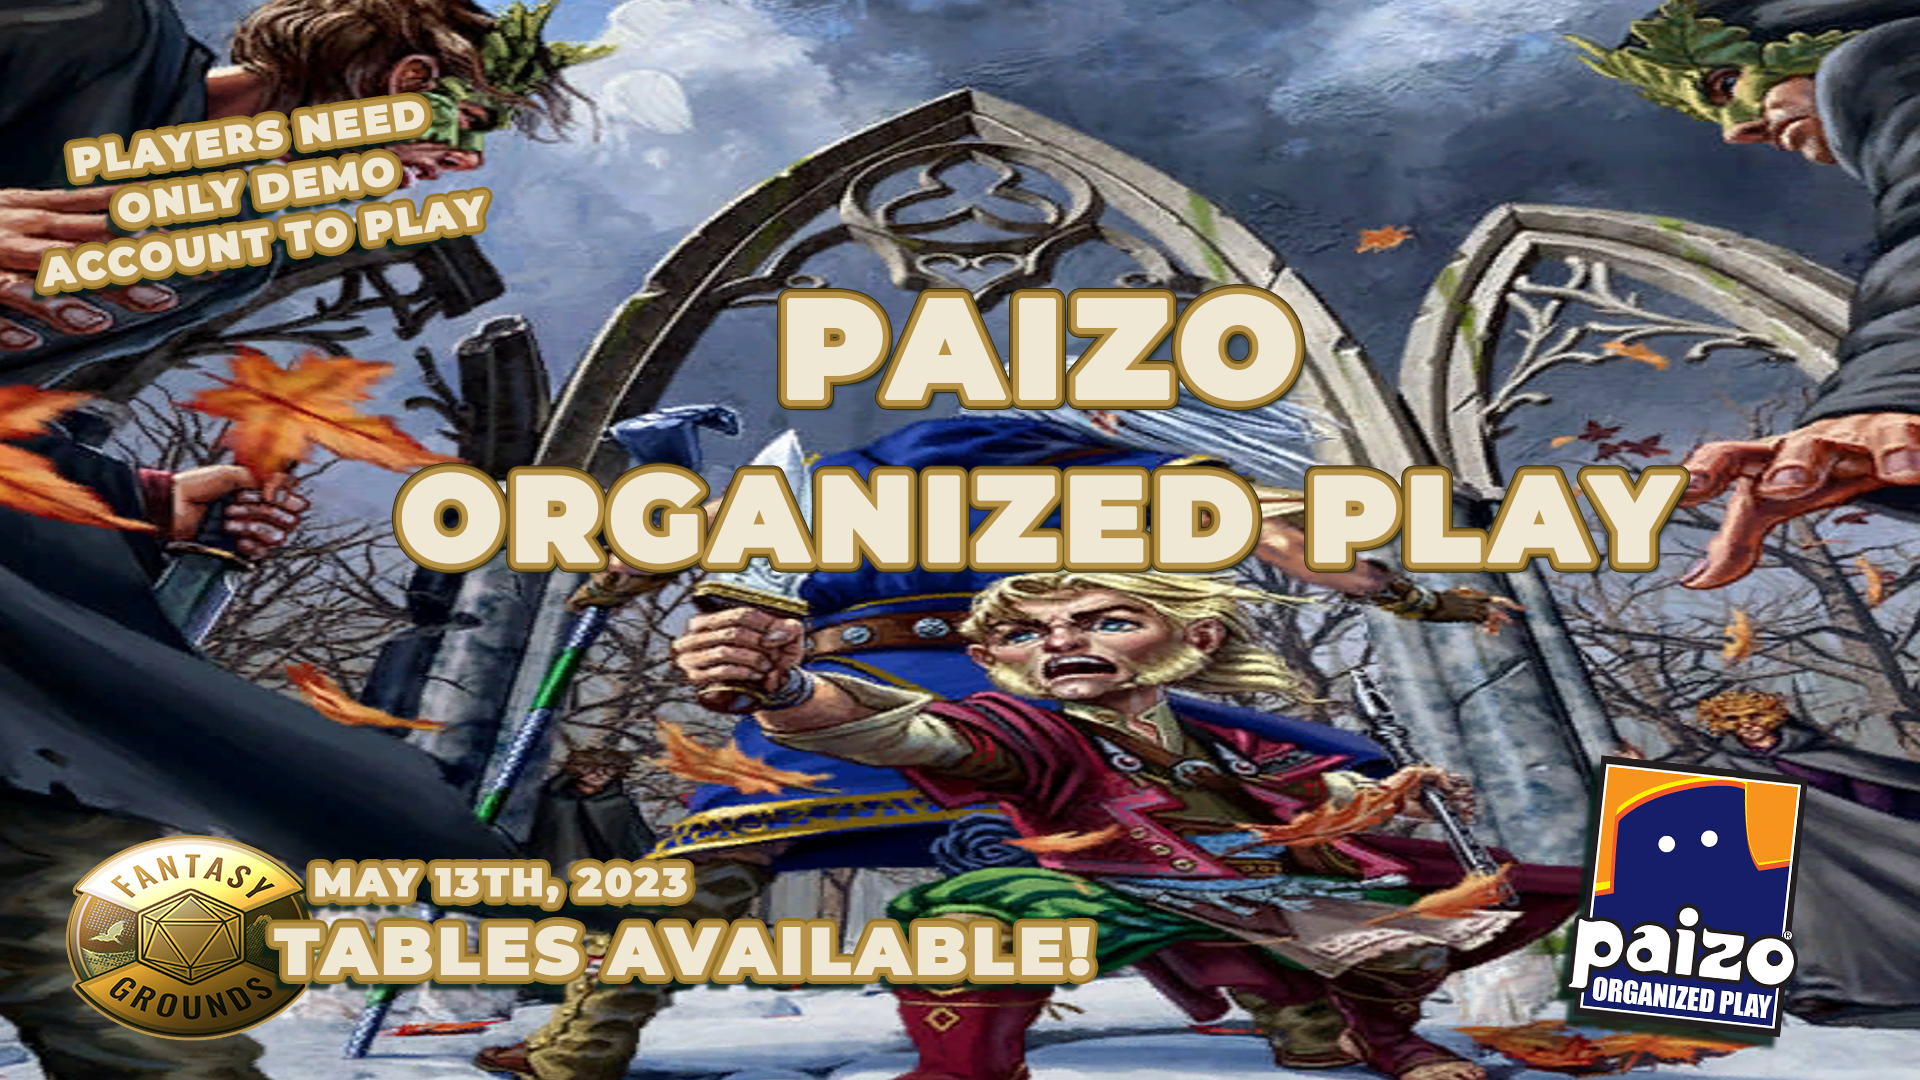 FG Paizo Game Day may 13 3.png